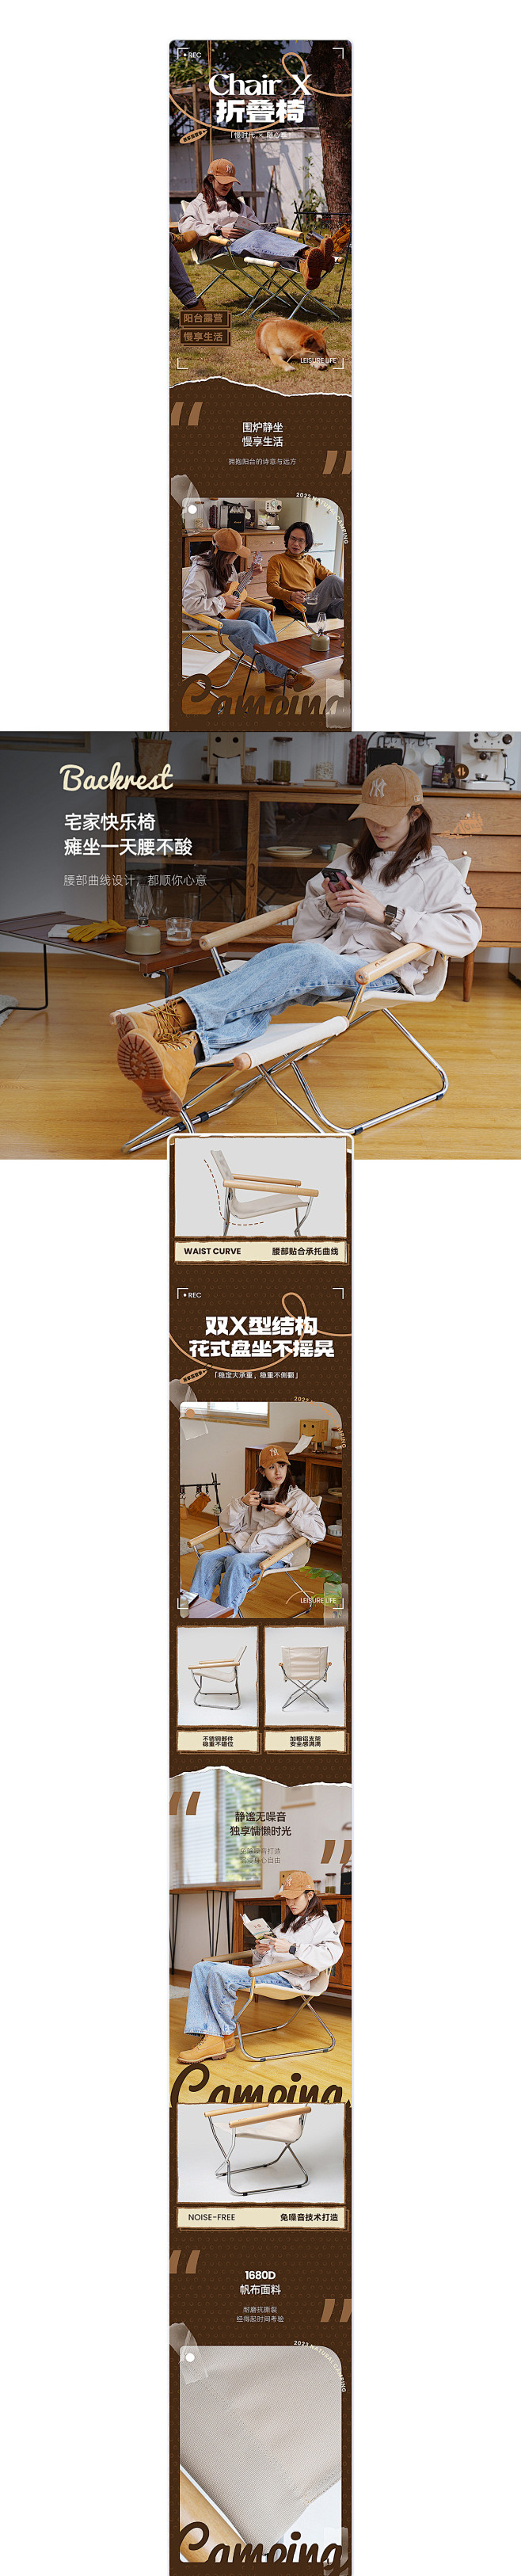 户外椅 - 超级单品视觉升级详情页设计